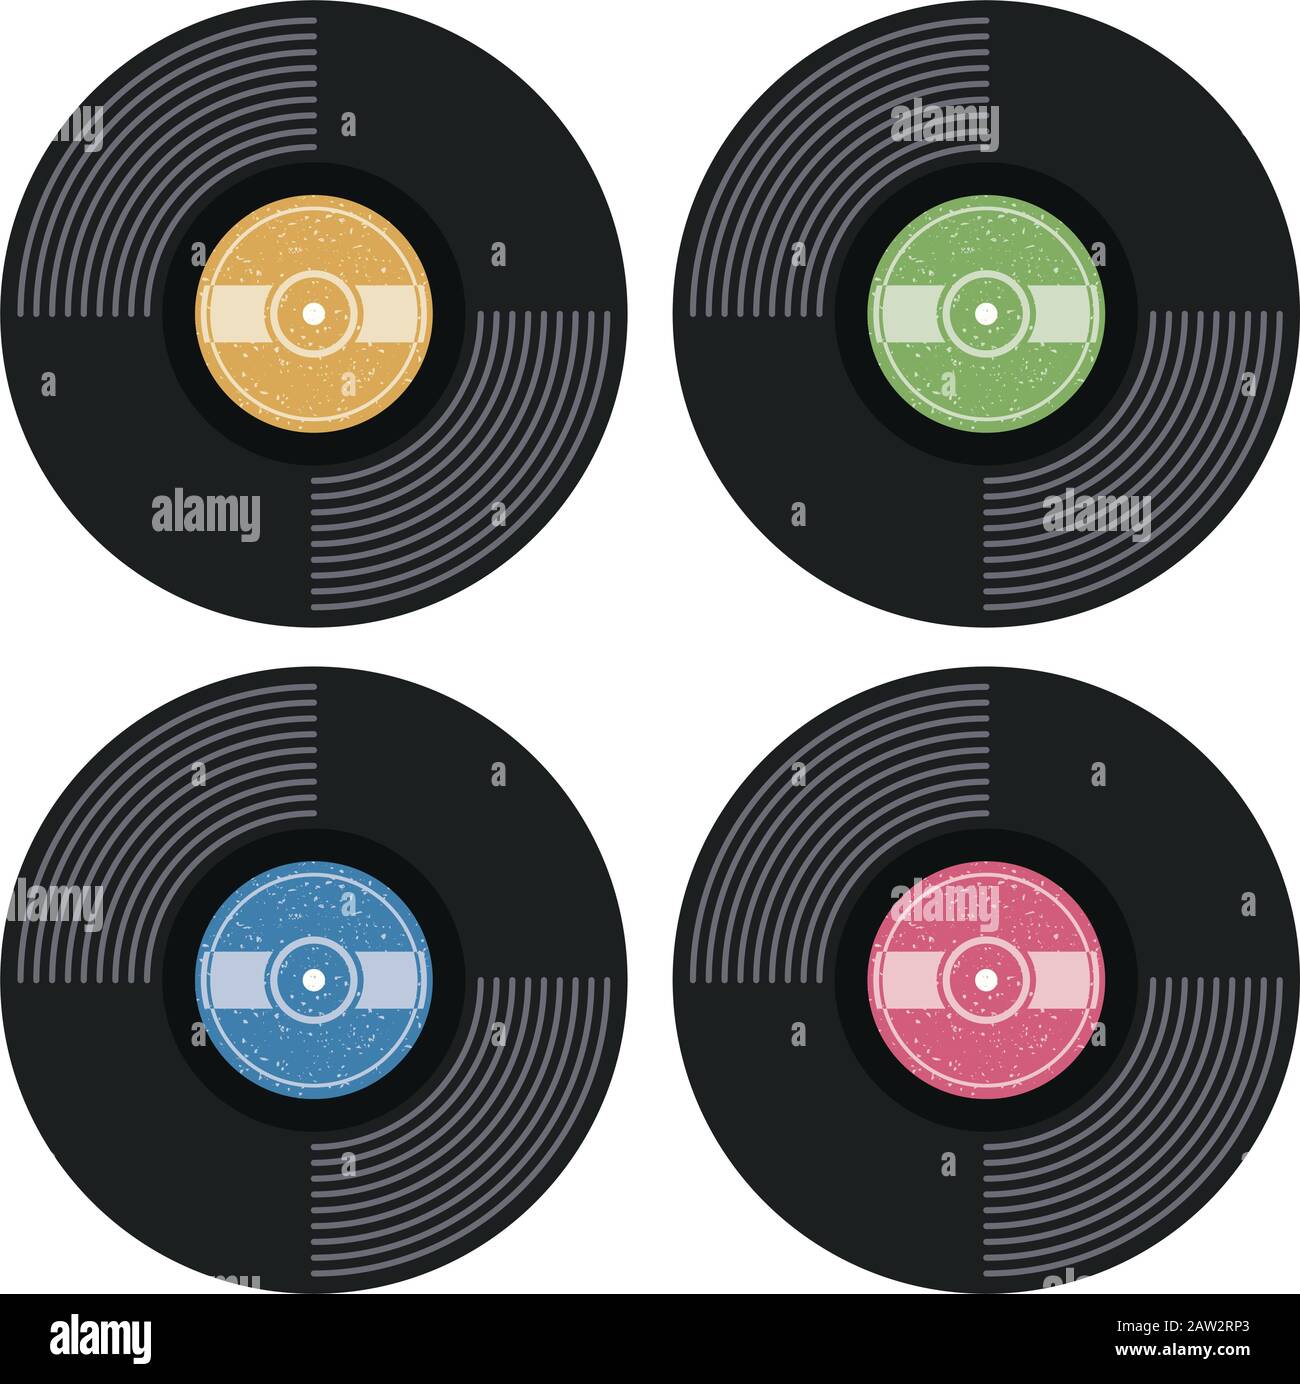 Disco lp de vinilo de gramófono de música 3d con icono de portada